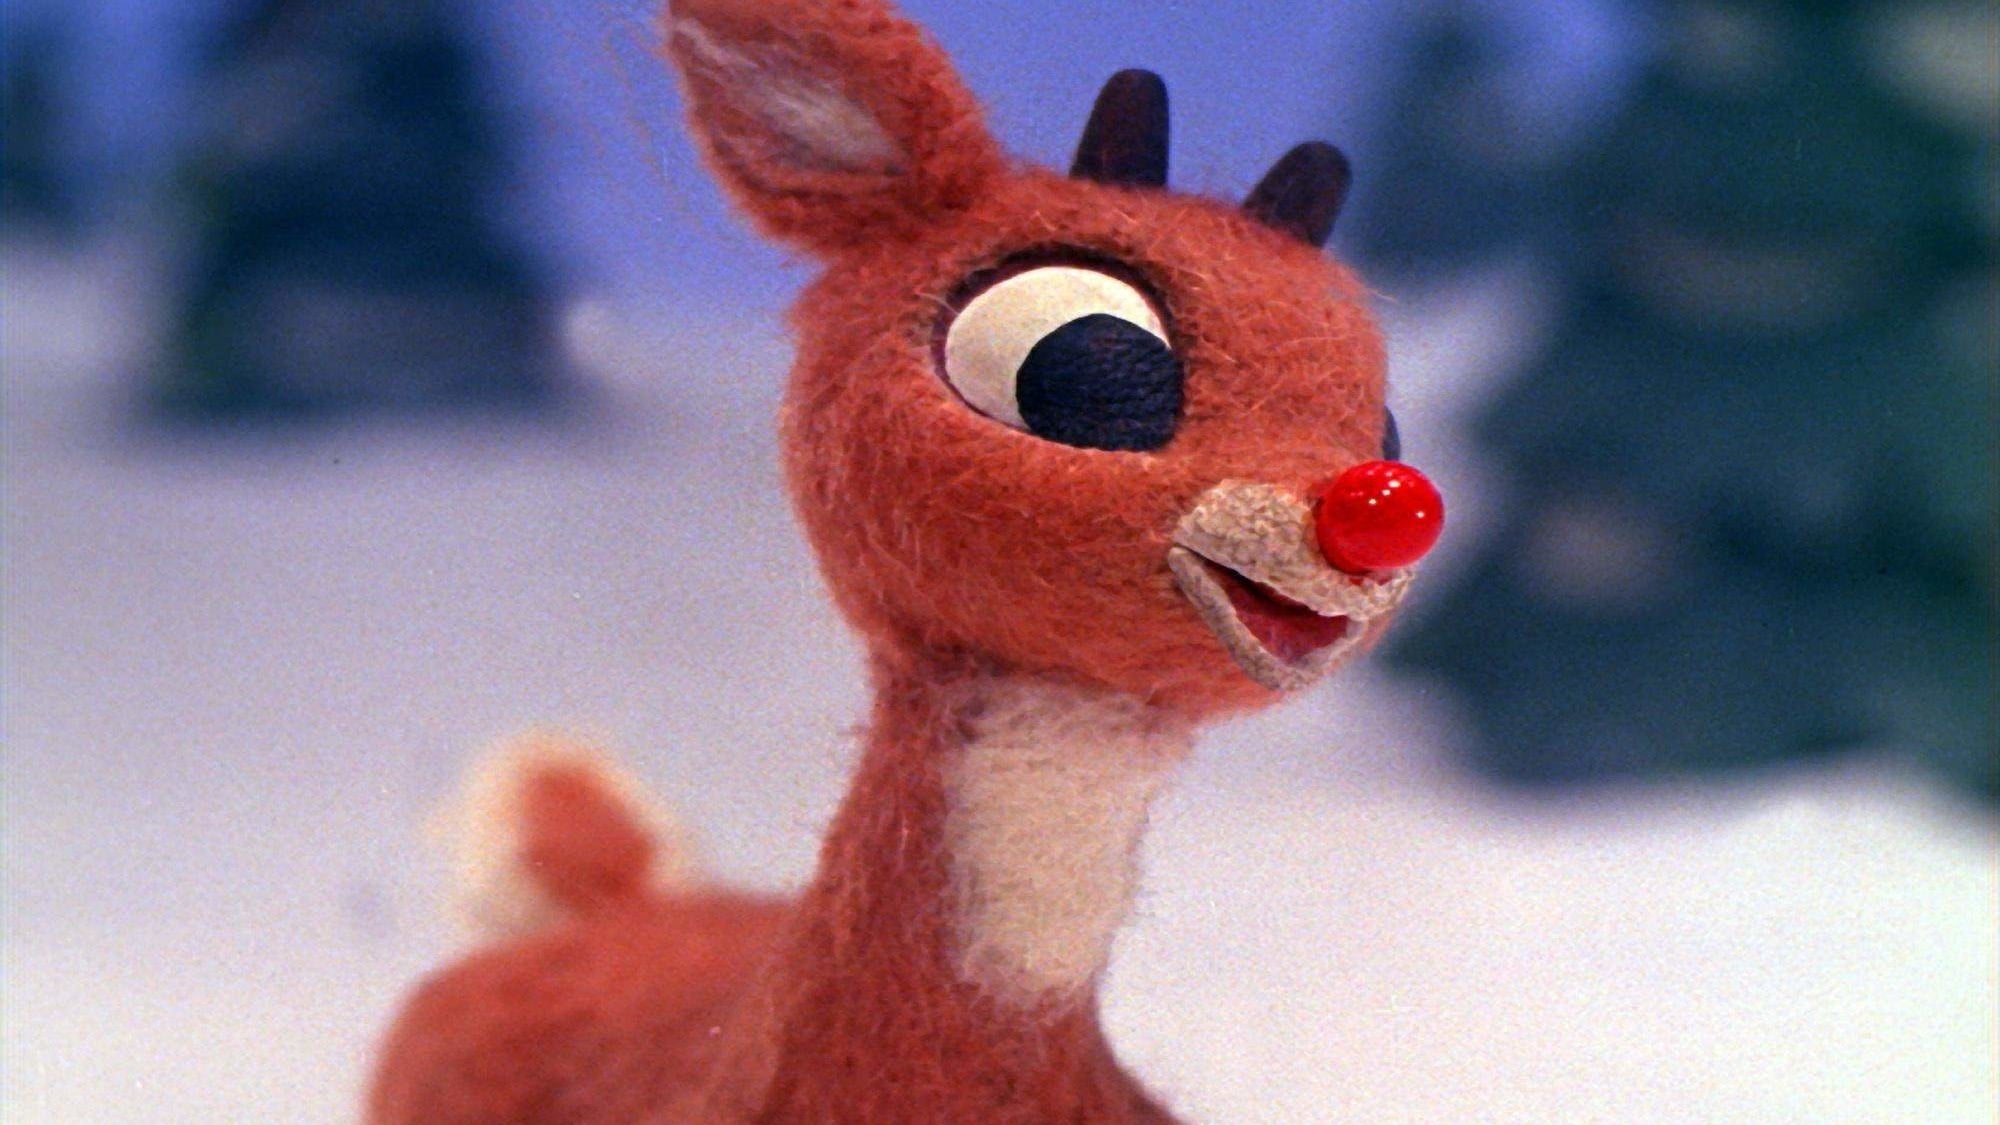 Rudolph mit der roten Nase - (Das Original) (1964) 